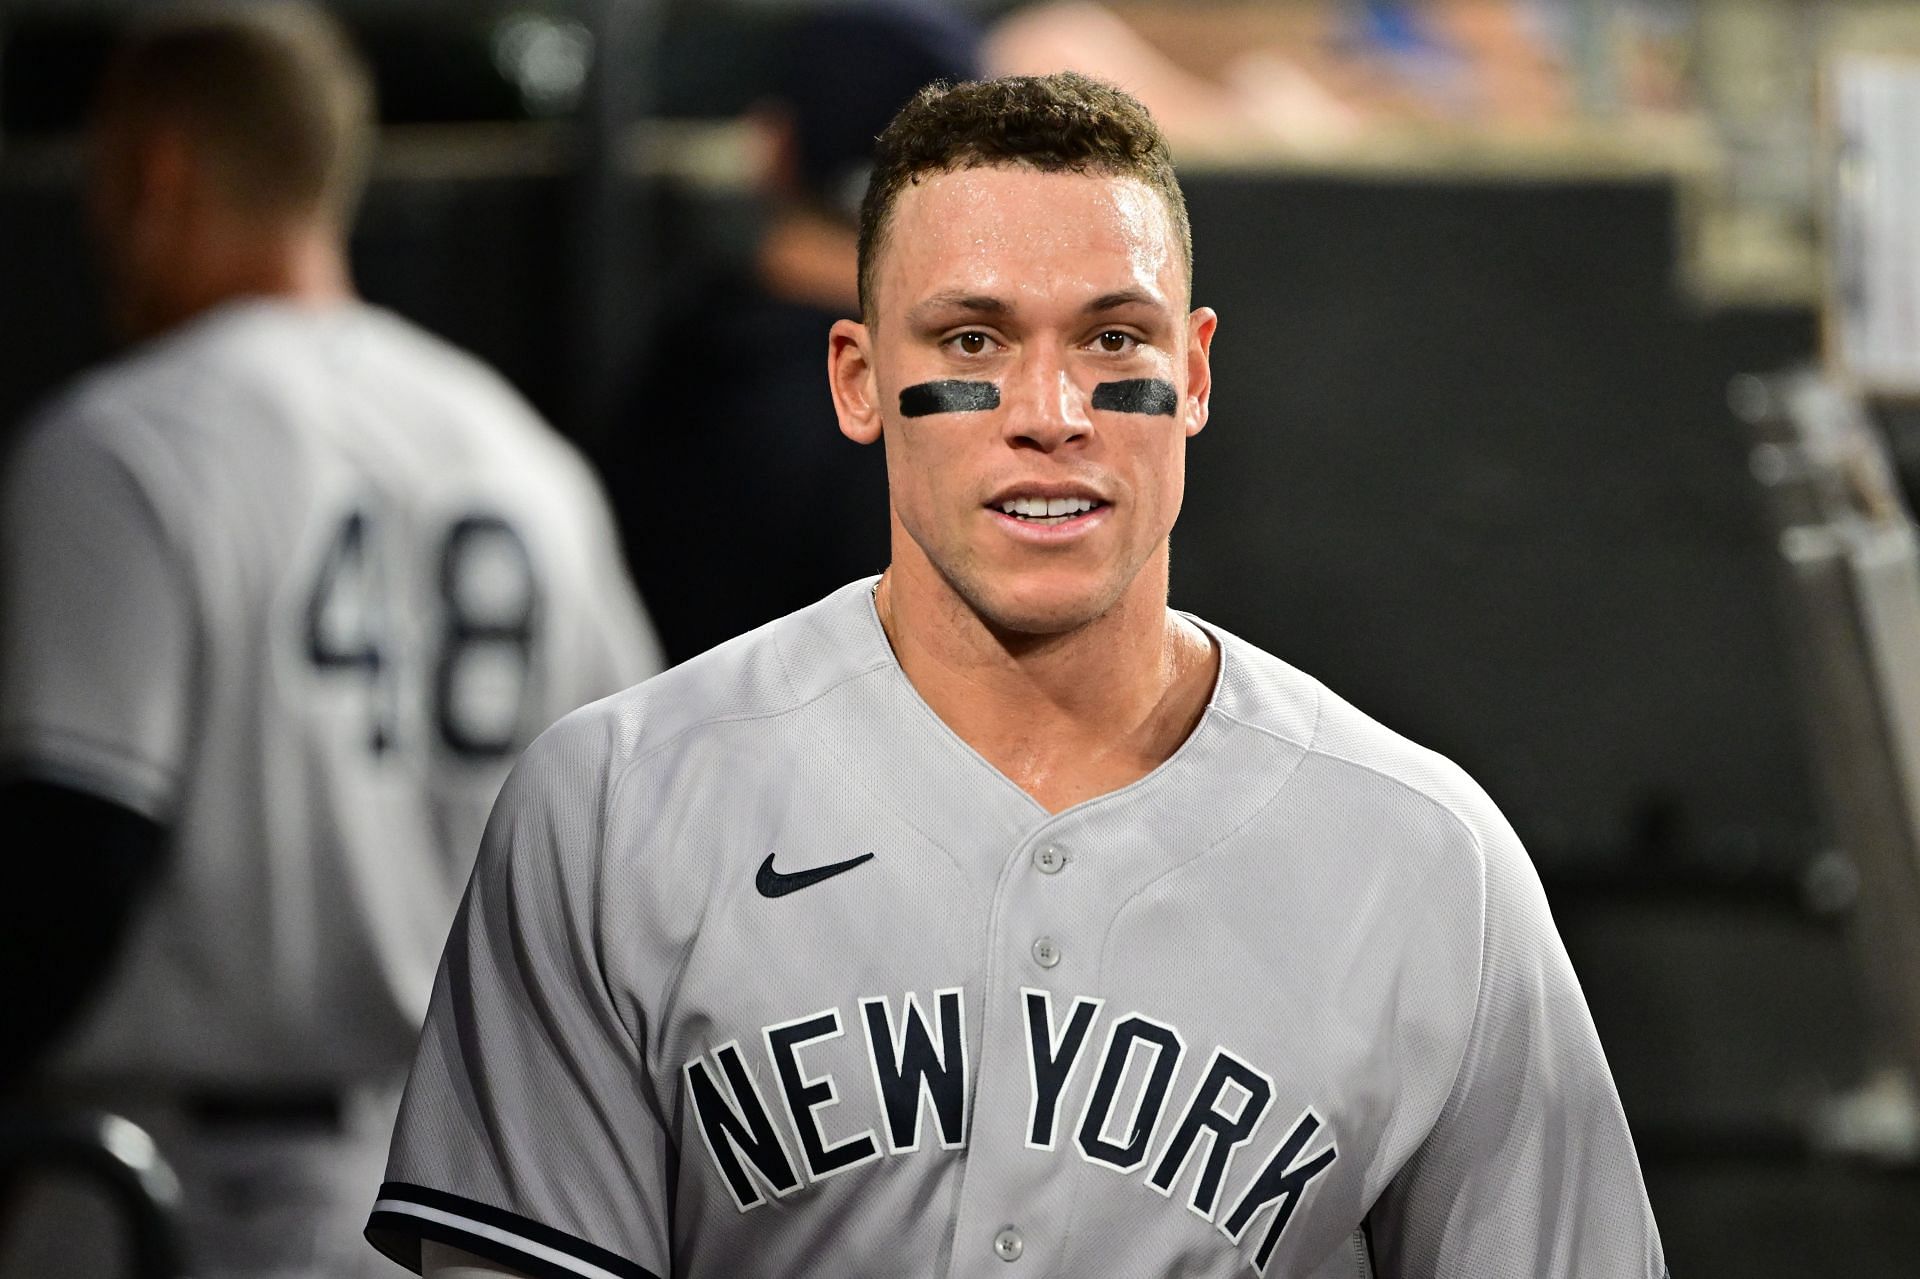 New York Yankees superstar Aaron Judge